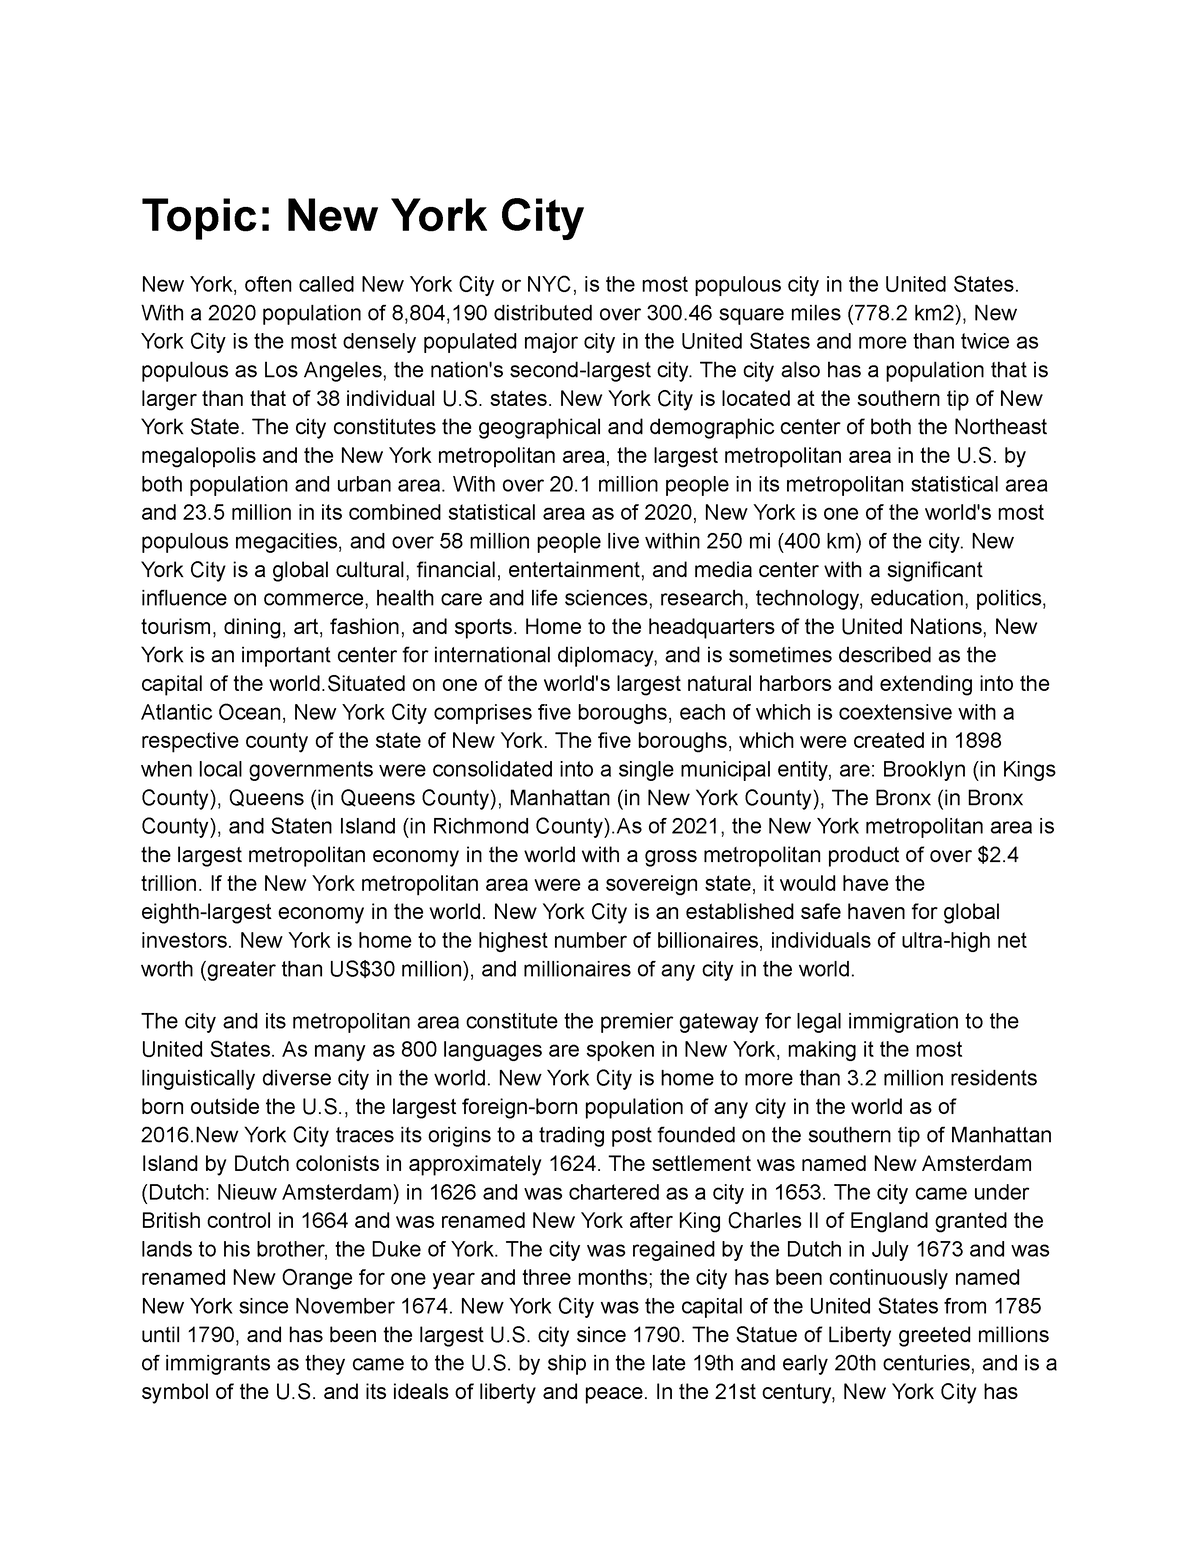 describing new york city essay